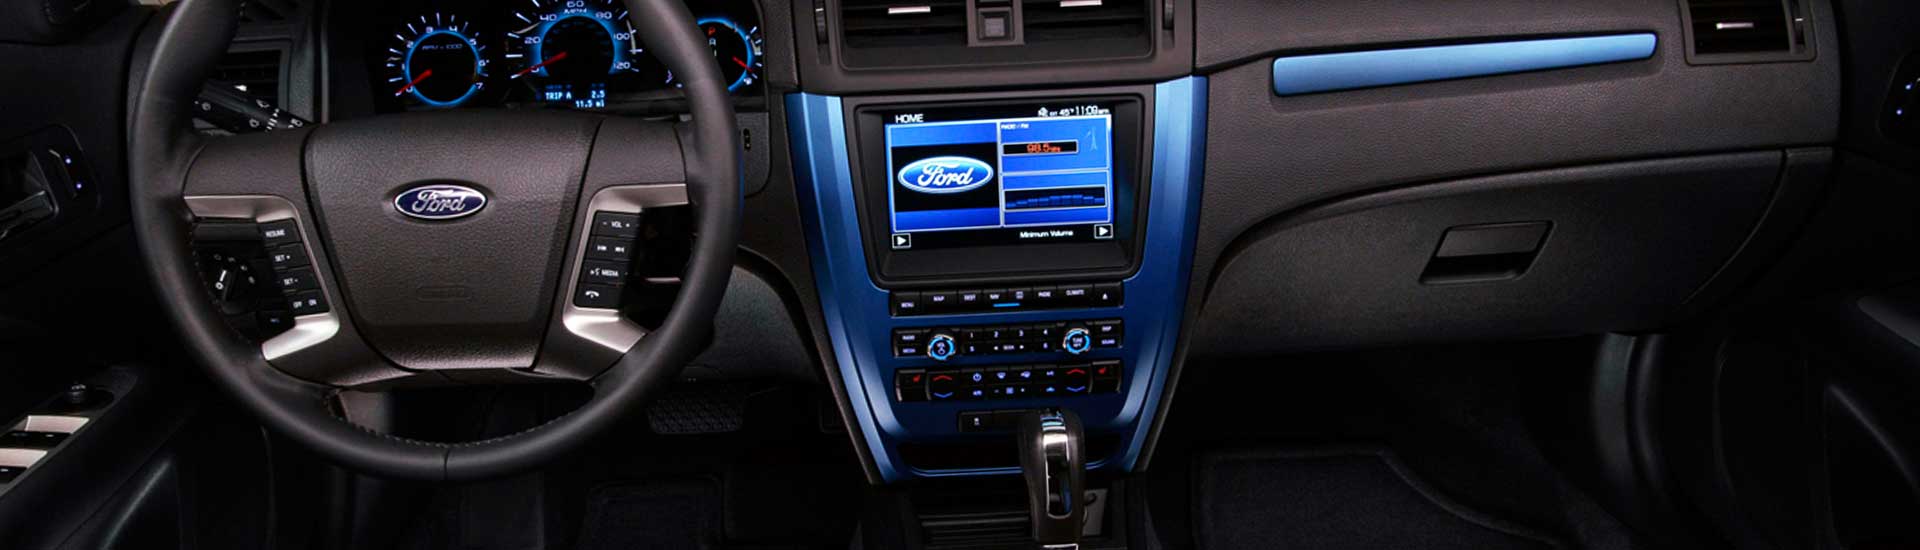 Blue carbon fiber dash kit inside Ford